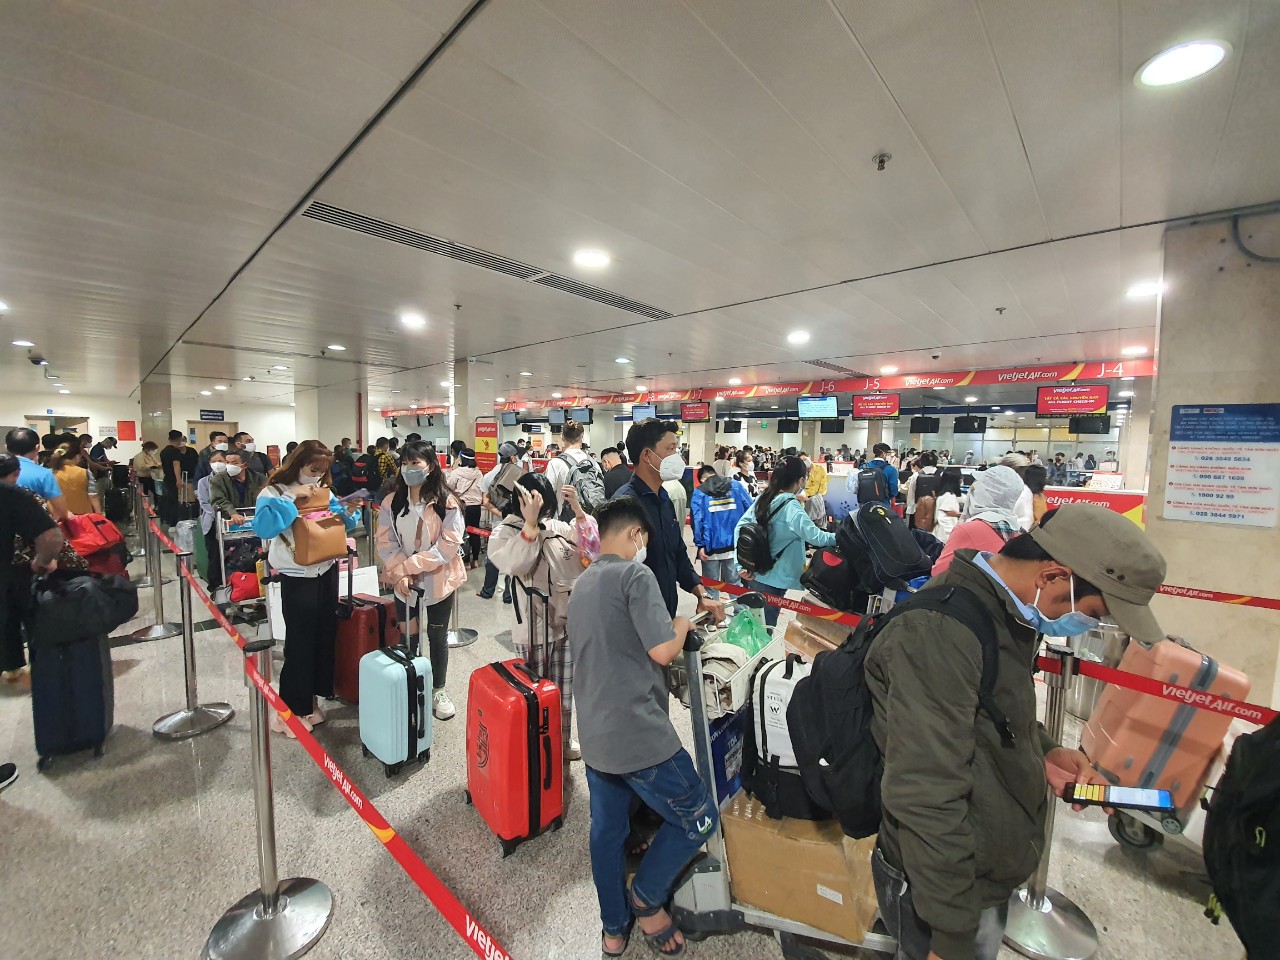 Sân bay Tân Sơn Nhất kín người về quê ăn Tết - Ảnh 3.